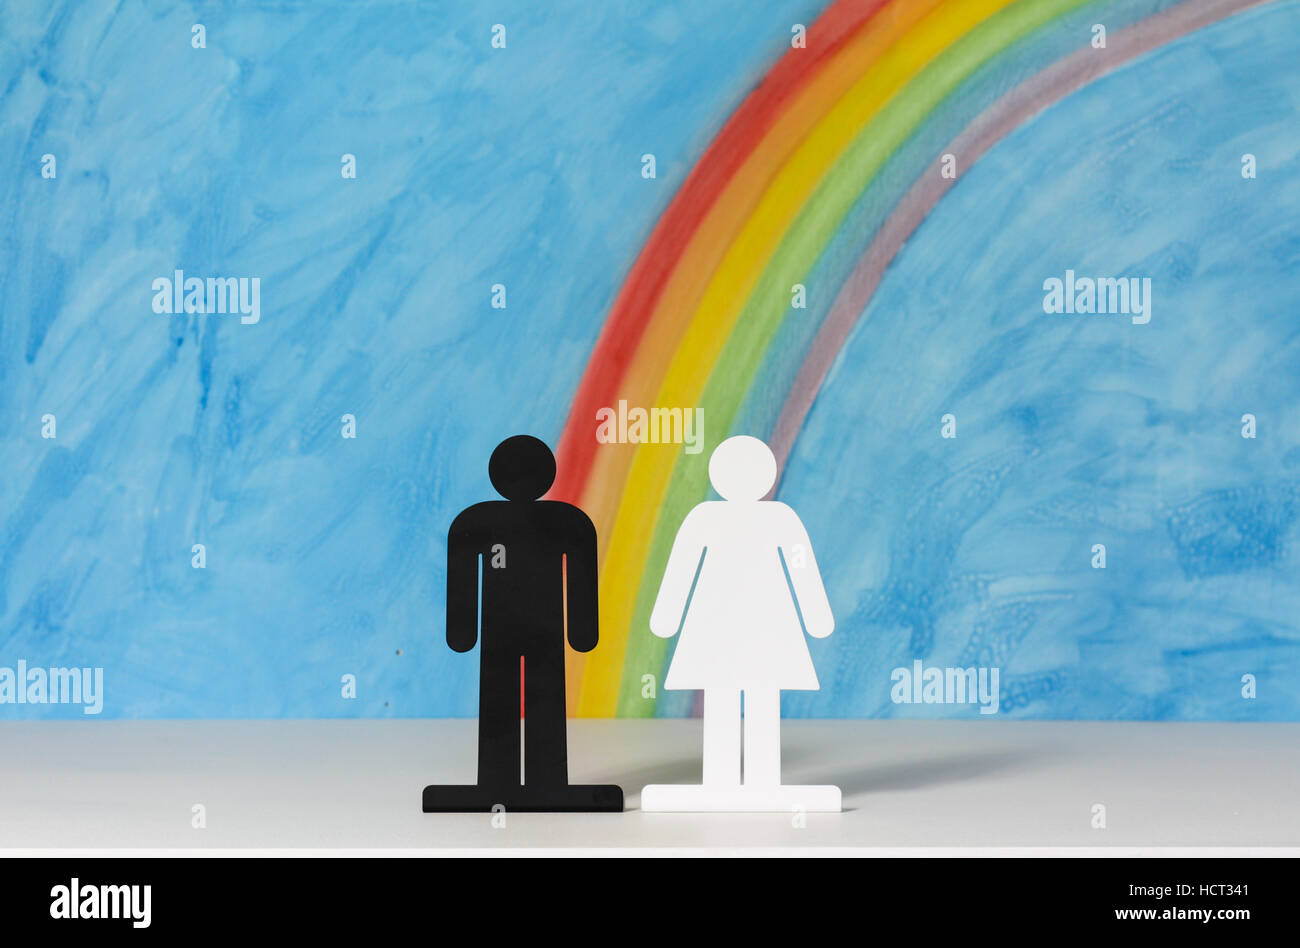 Mann und Frau Symbole mit einem Regenbogen und blauer Himmel zur Veranschaulichung des Konzepts der Ehe, Beziehungen und Gleichstellung der Geschlechter. Stockfoto